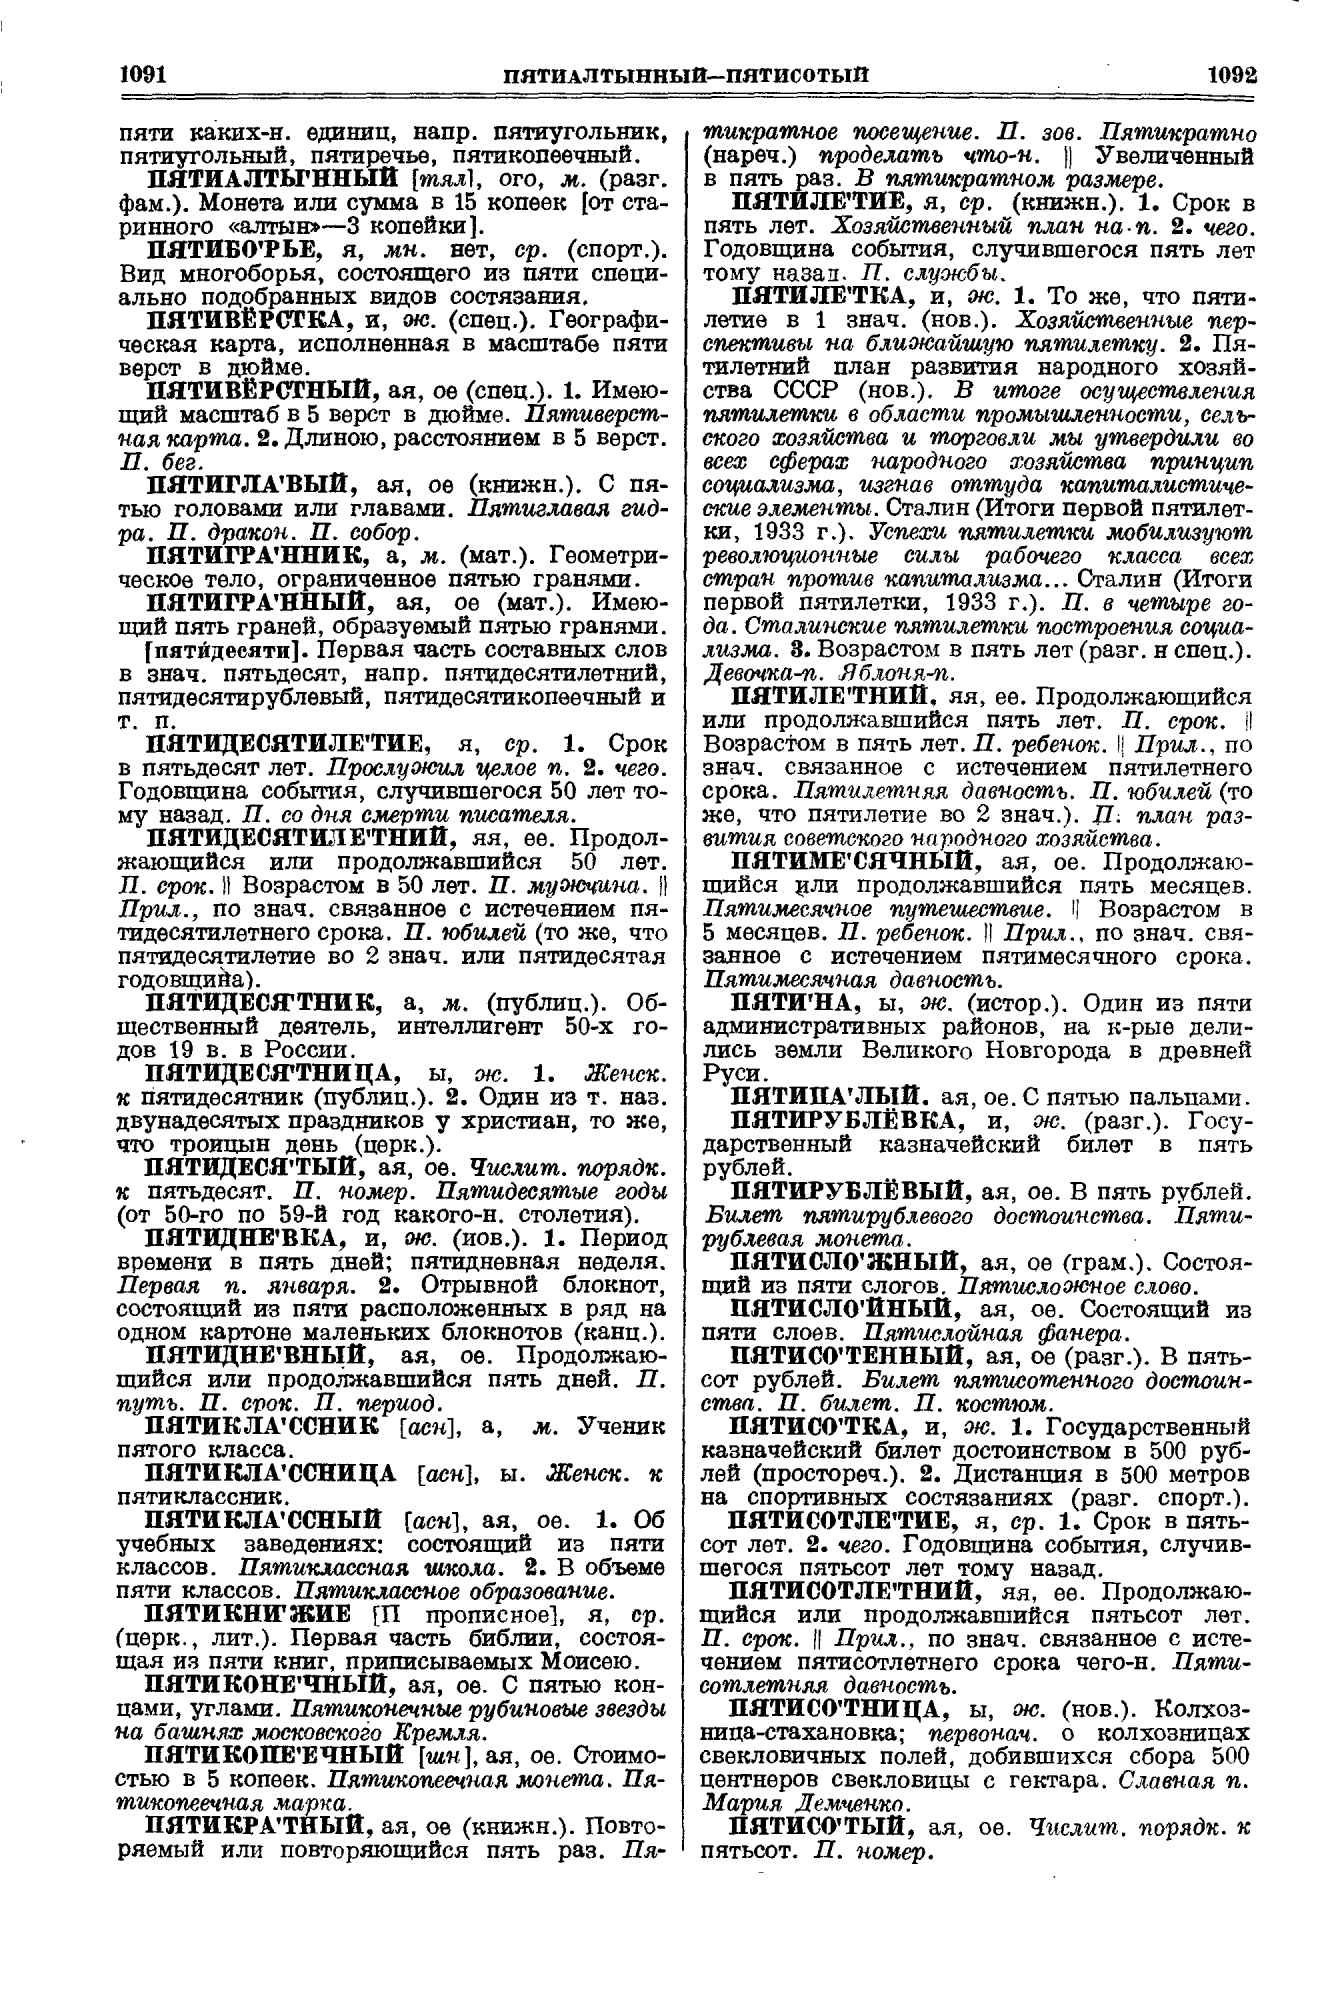 Фотокопия pdf / скан страницы 546 толкового словаря Ушакова (том 3)